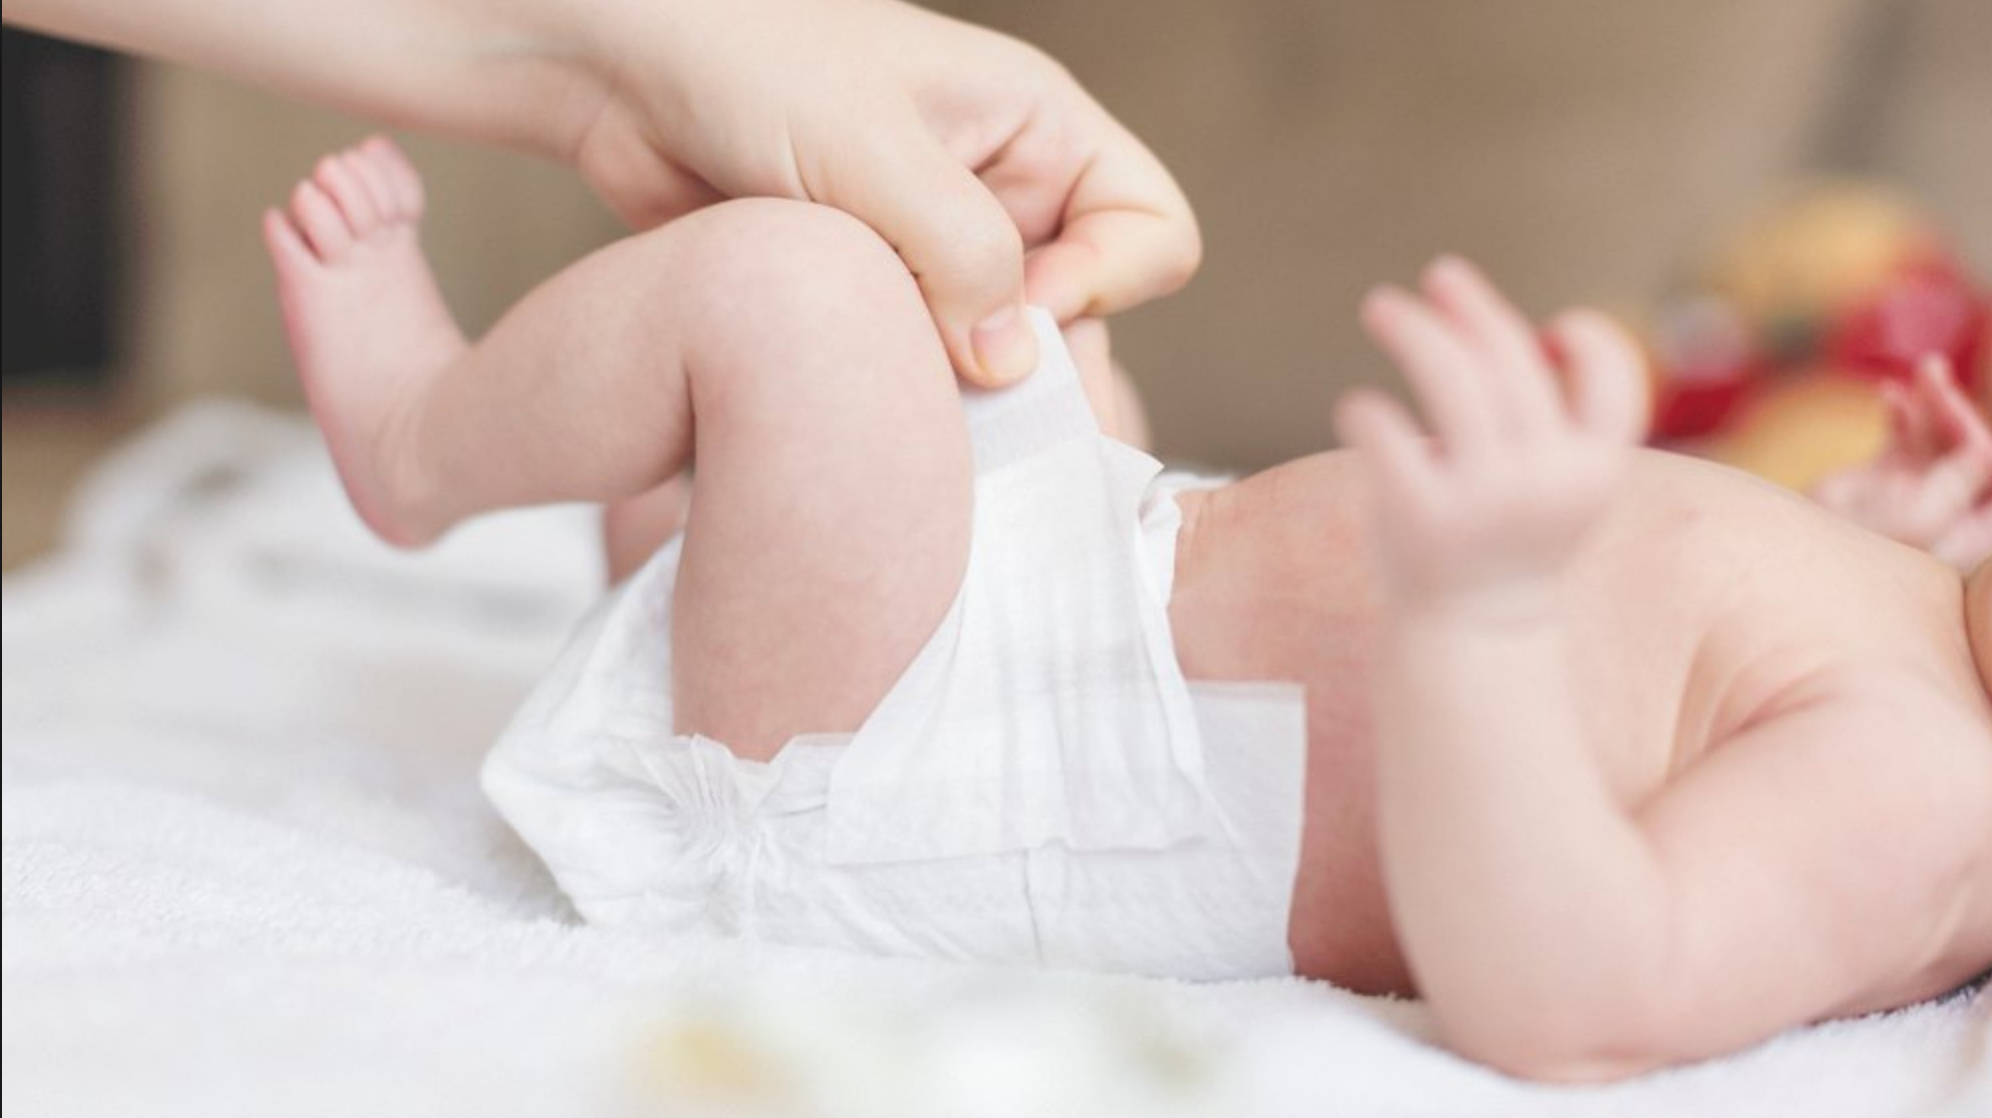 Les lingettes reconnues dangereuses pour les fesses des bébés